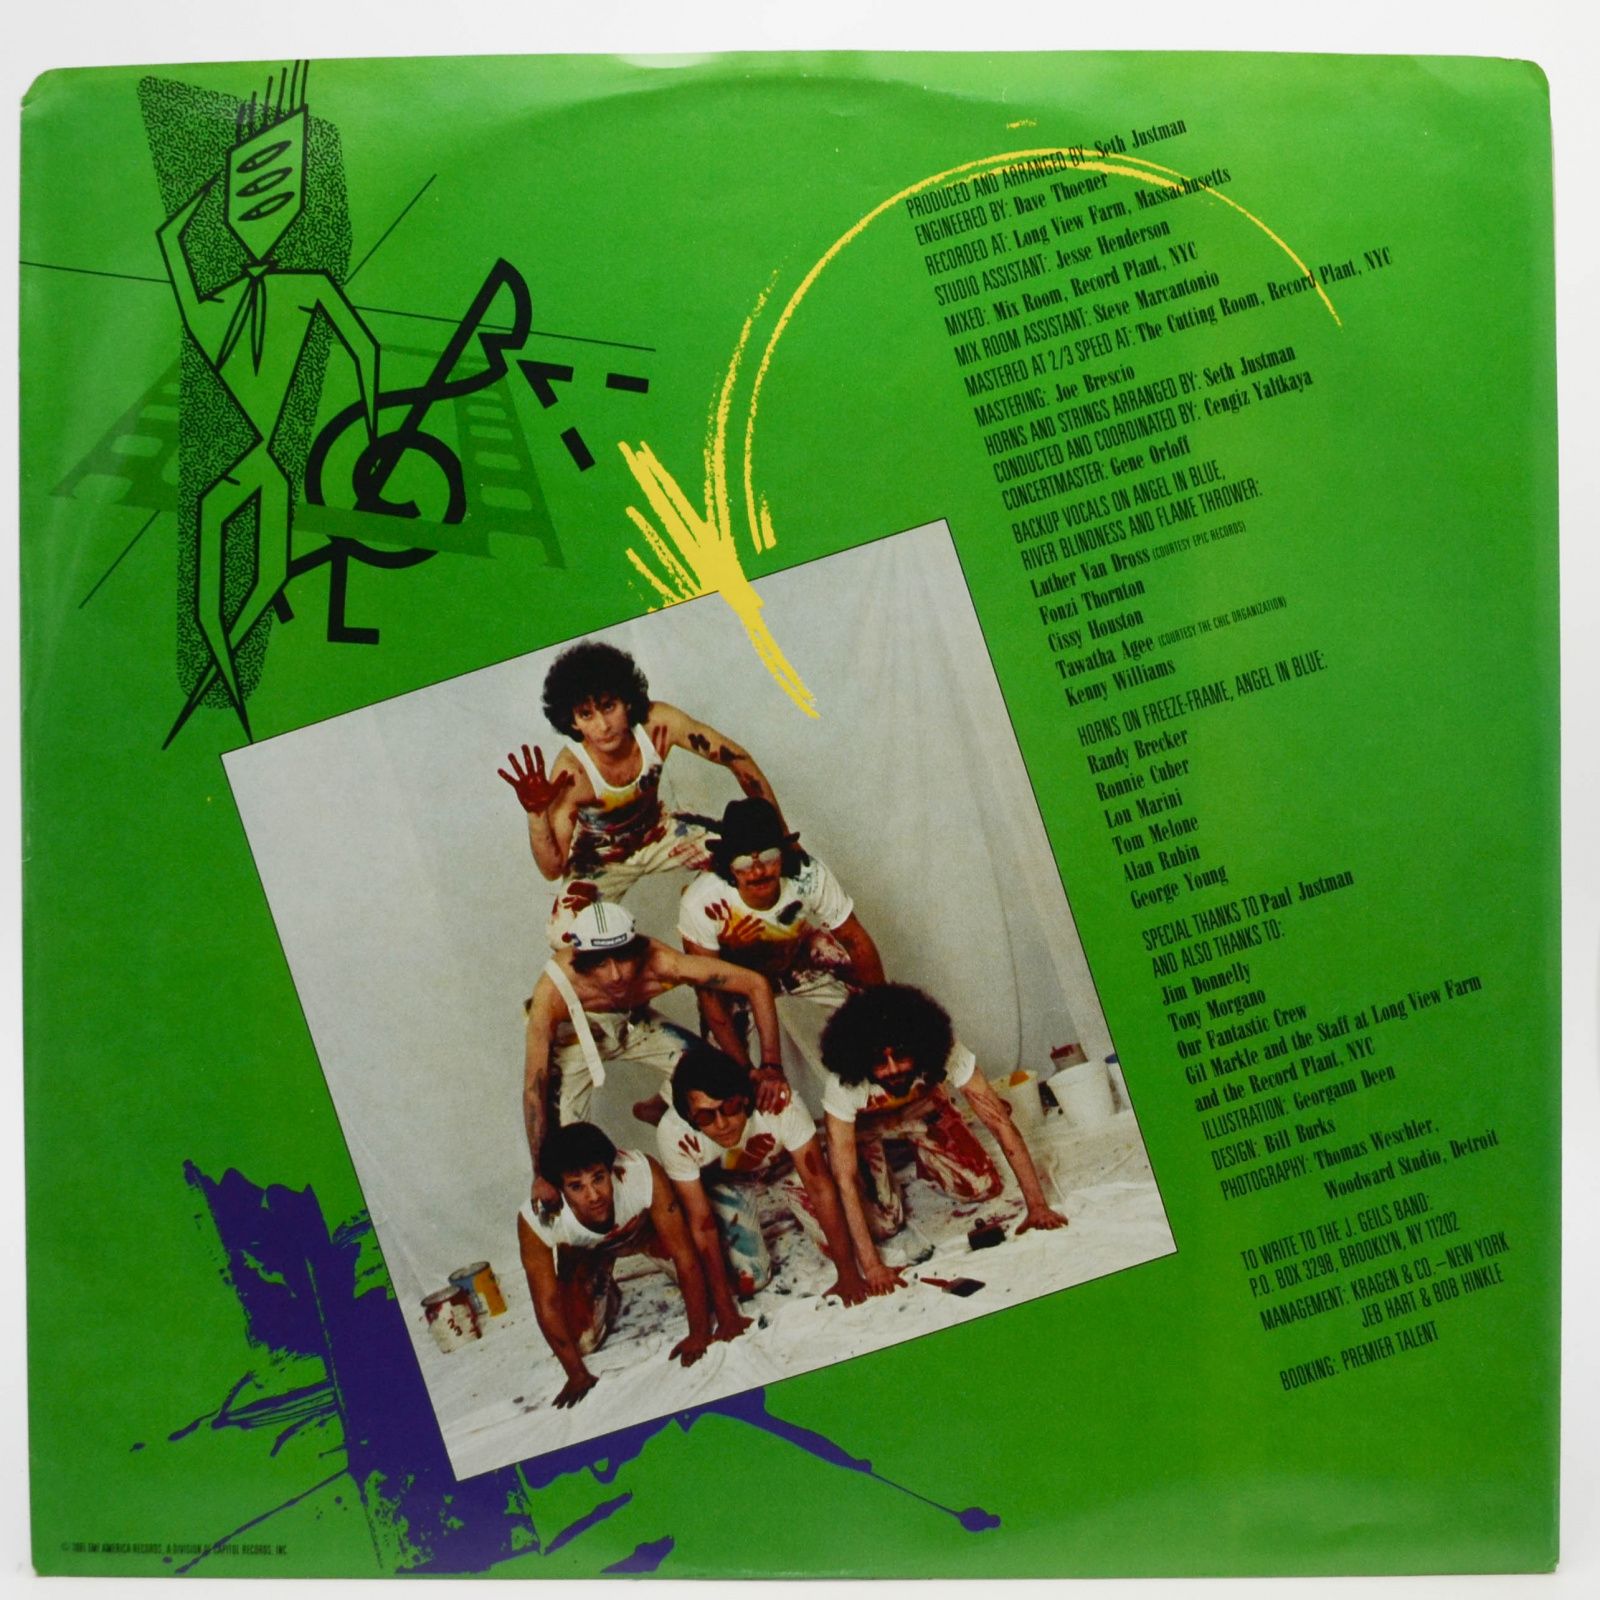 J. Geils Band — Freeze Frame, 1981